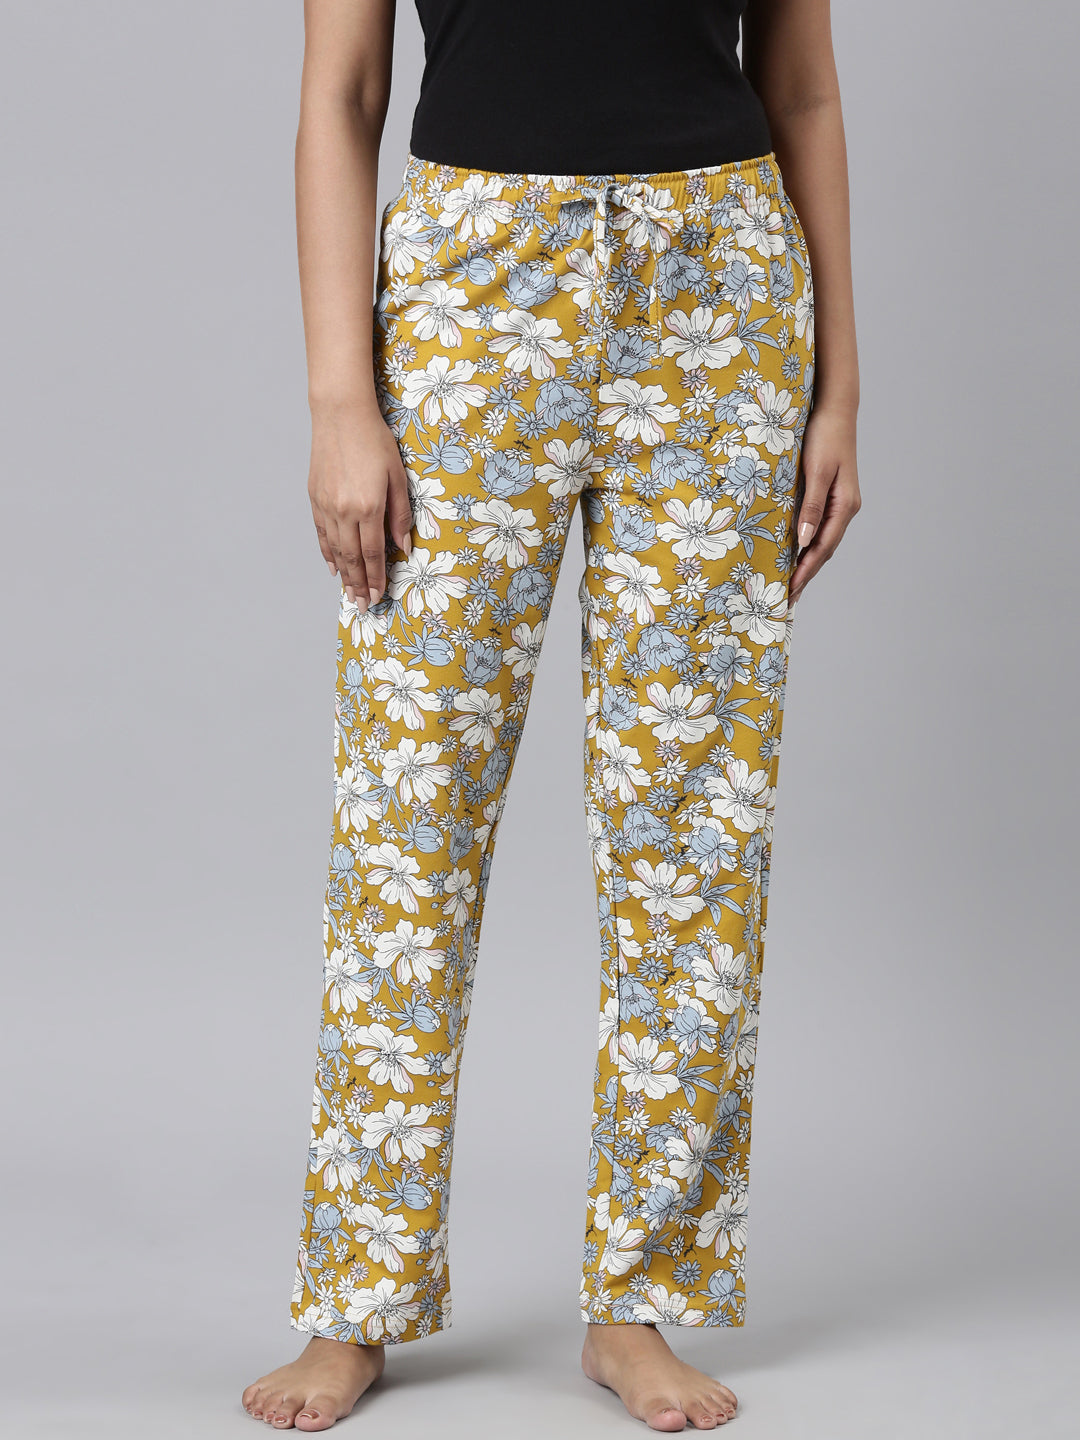 Women Printed Yellows Cotton Knit Lounge Pants